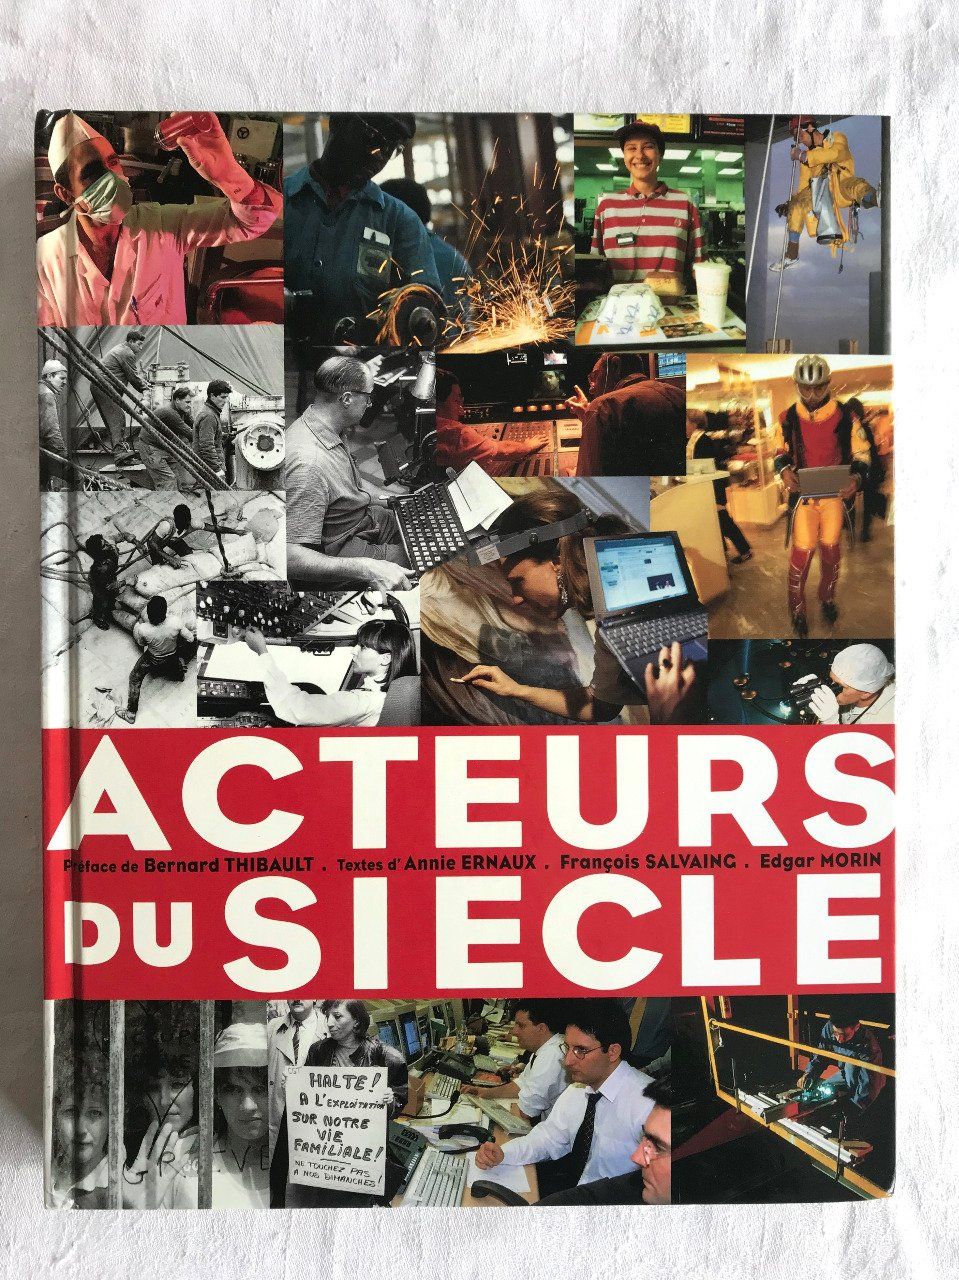 Livre Acteur du siècle, Édition Cercle d'art, grands photographes R. Doisneau, Yann Arthus Bertrand